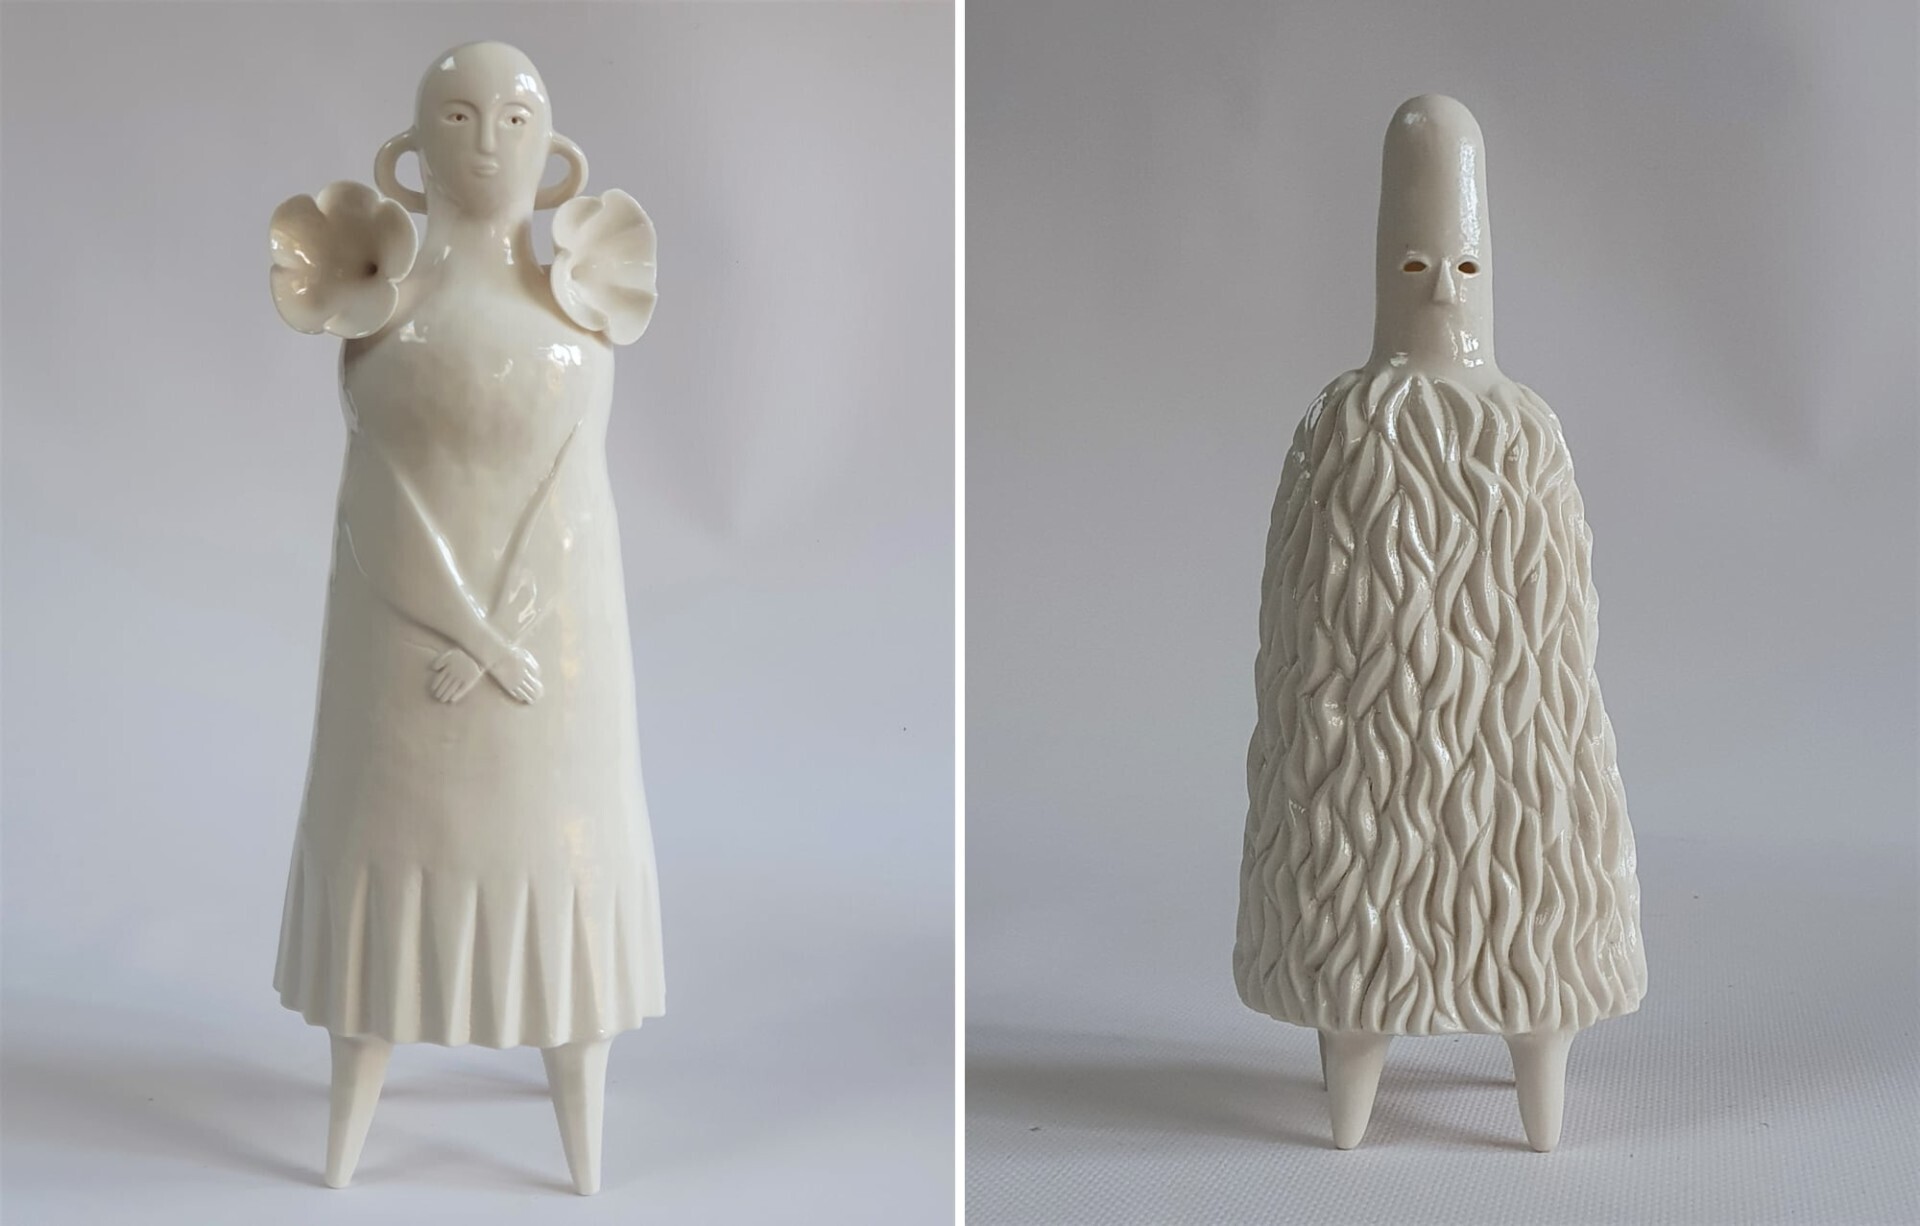 sophie woodrow figuras ceramica ejercito inquietante raro seres diminutos 2